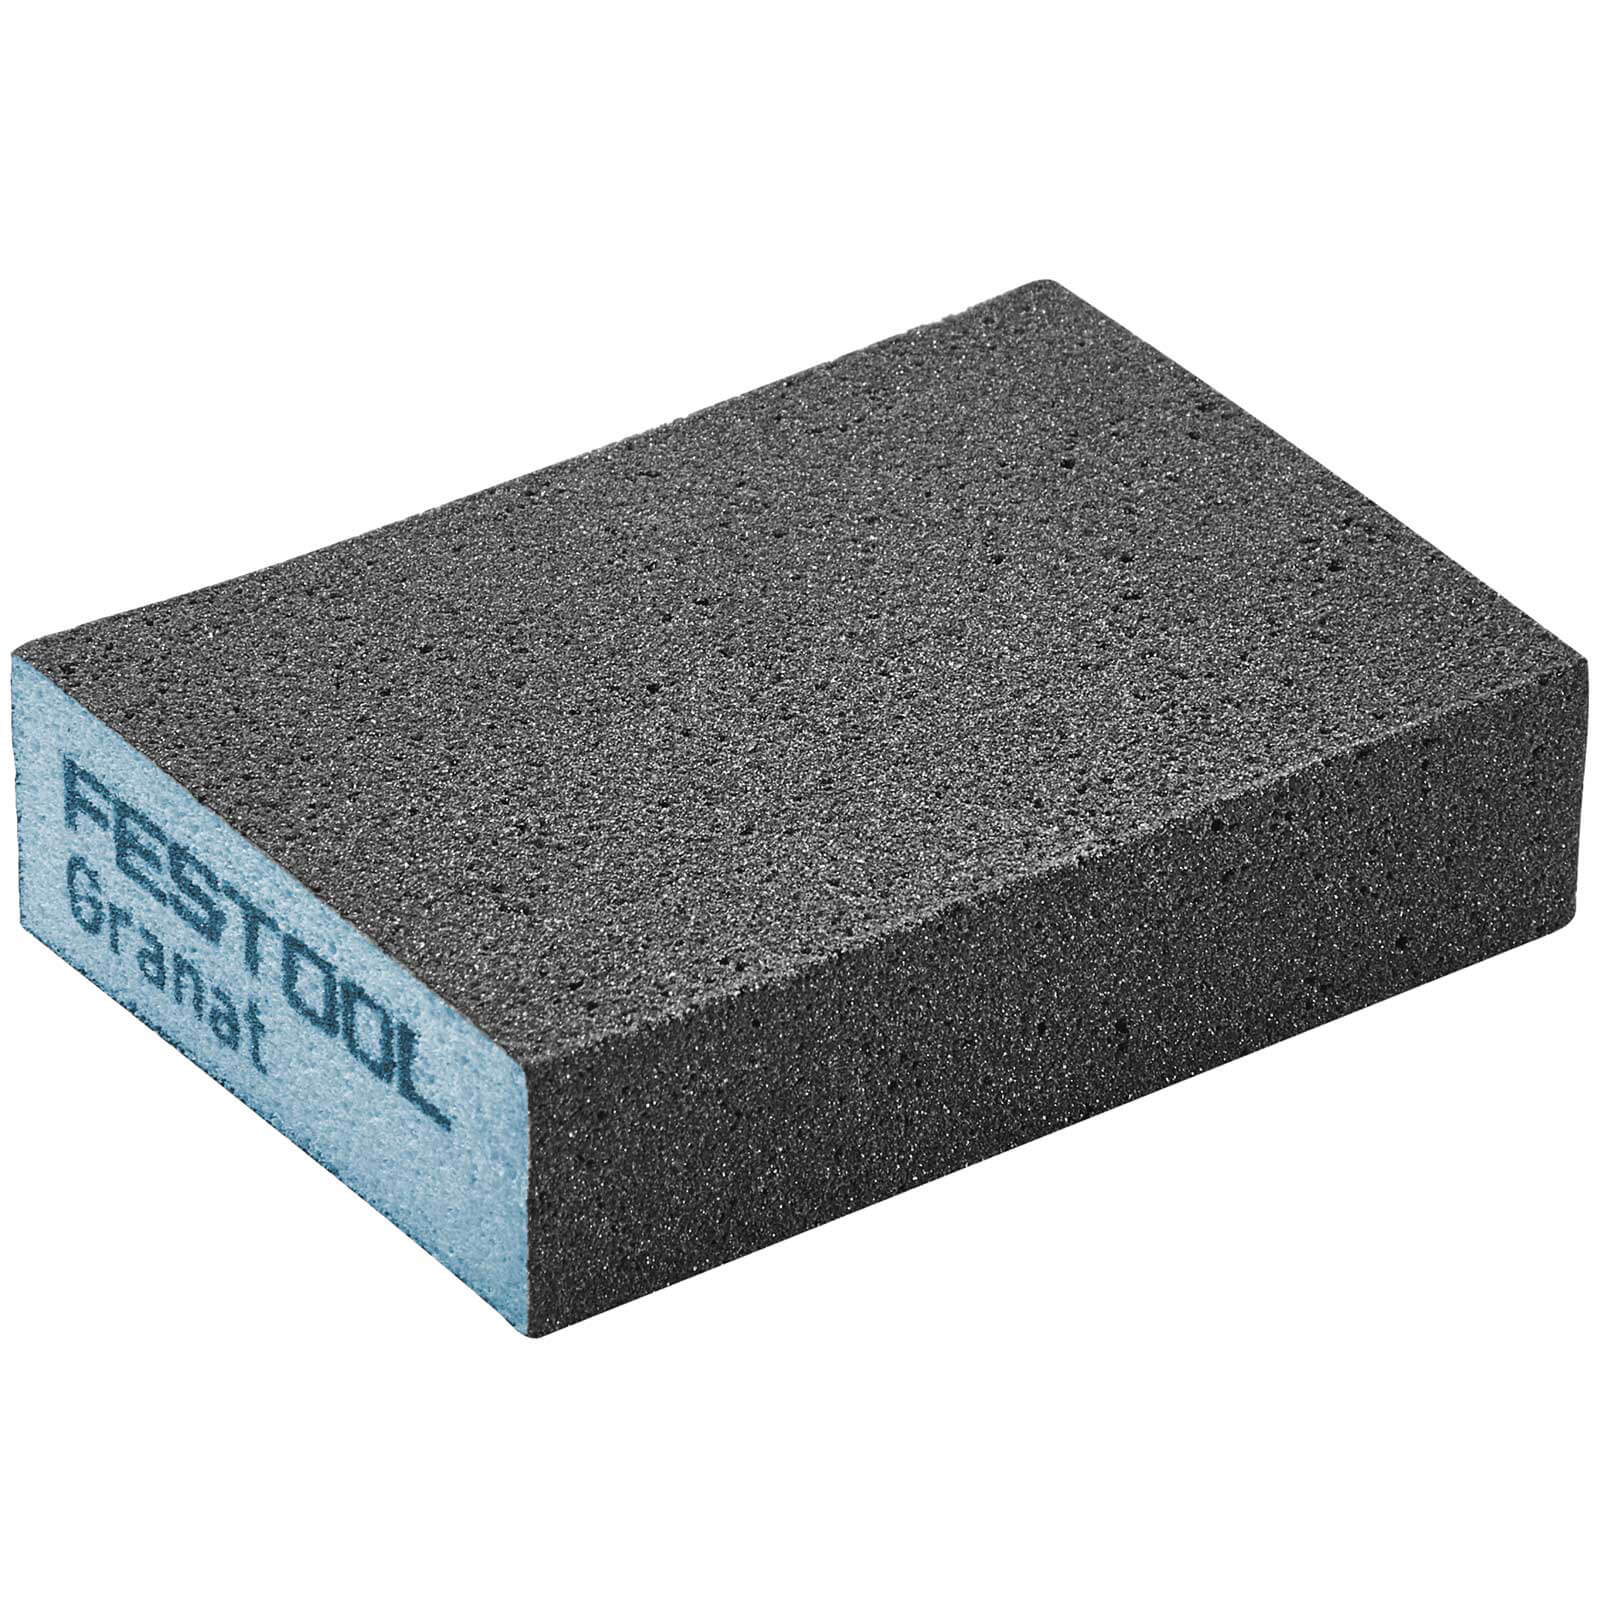 Image of Festool Abrasive Hand Sanding Sponge Block 120g Pack of 6